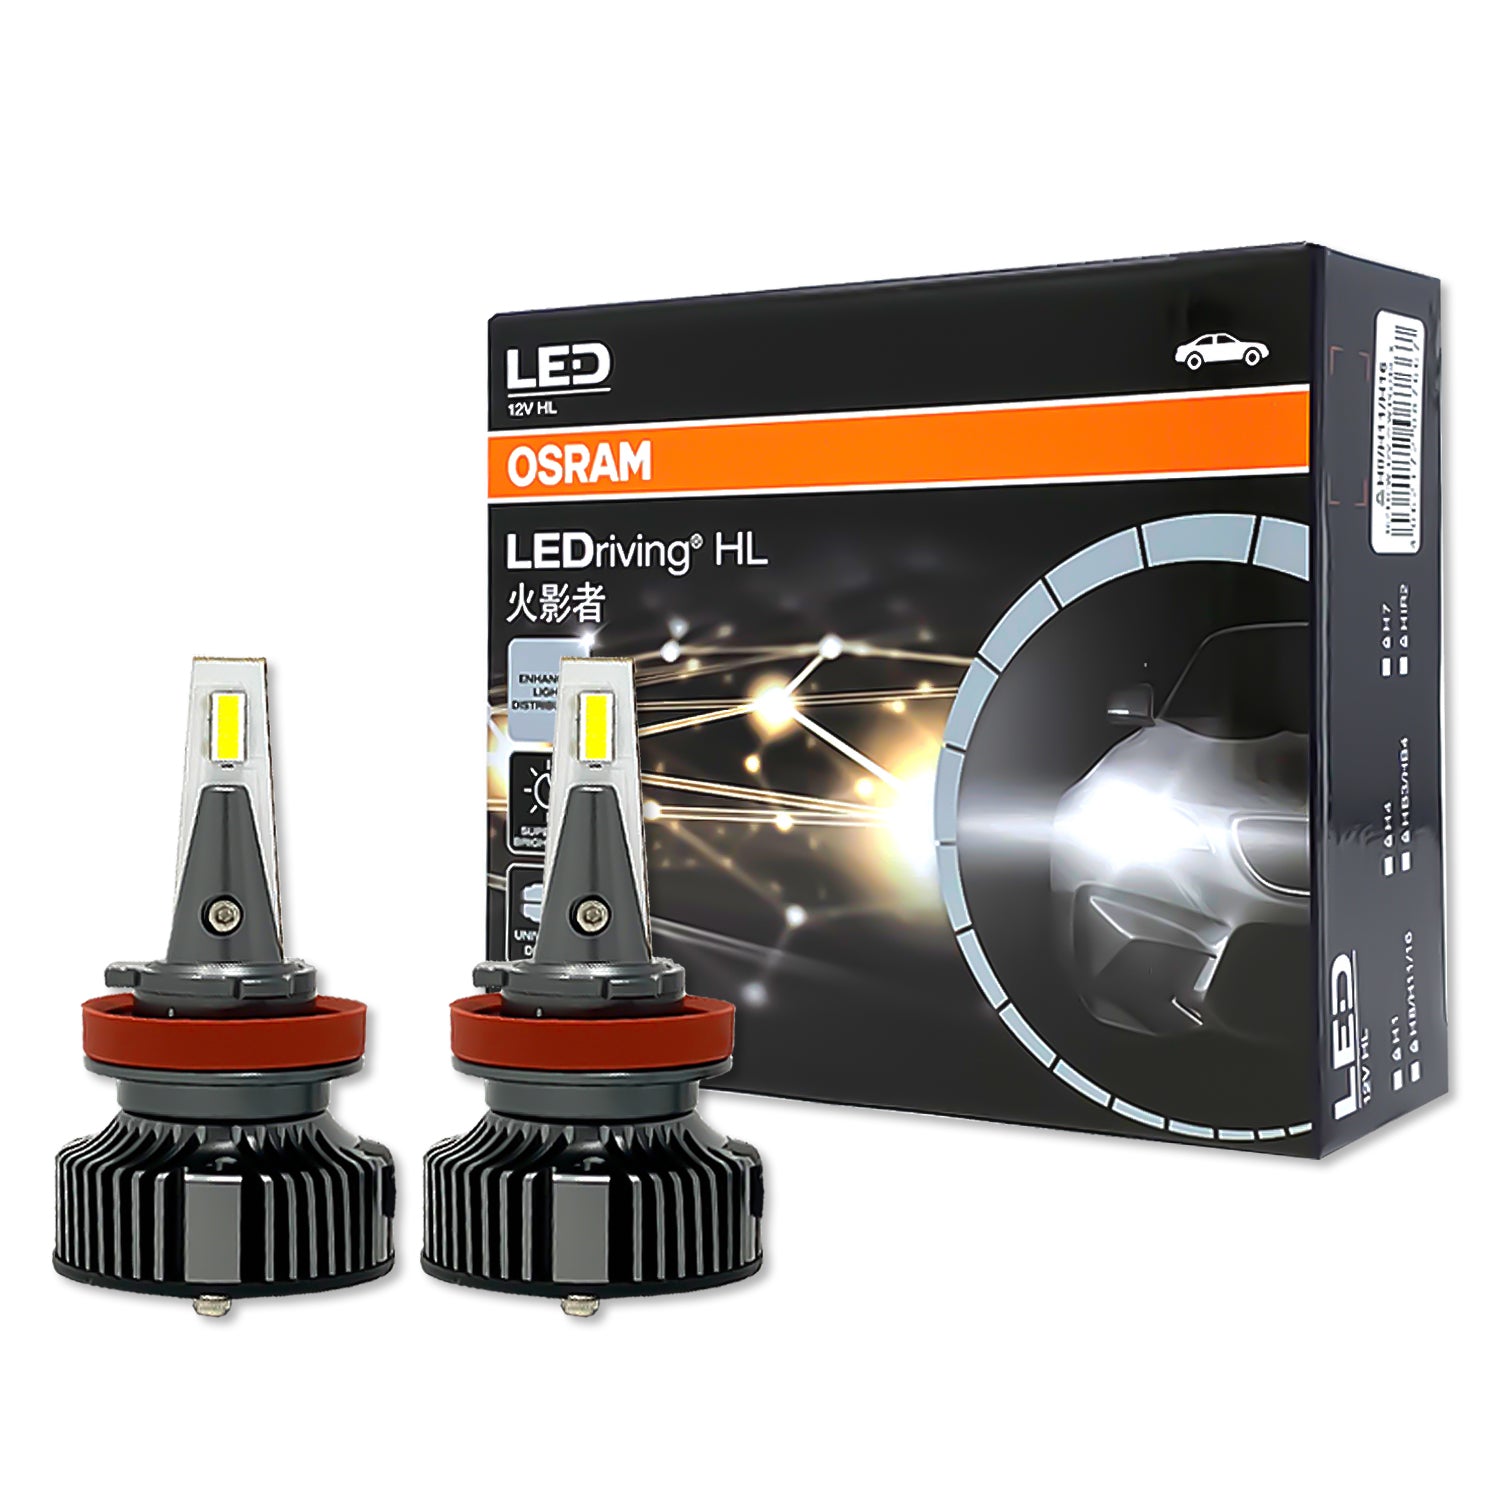 Osram H8/H11/H16 Led Headlight Bulb, 25w, 6000k, Pair at Rs